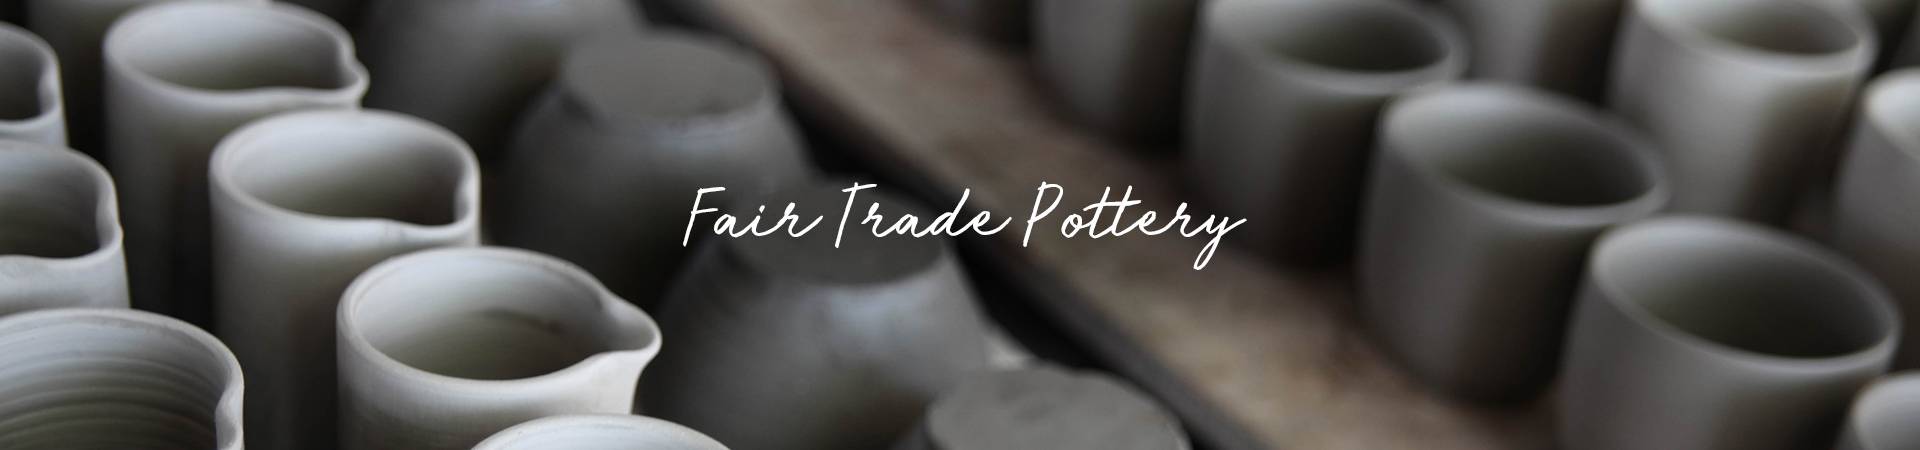 Nkuku_Art-of-Making_Header_Fair-Trade-Pottery.jpg